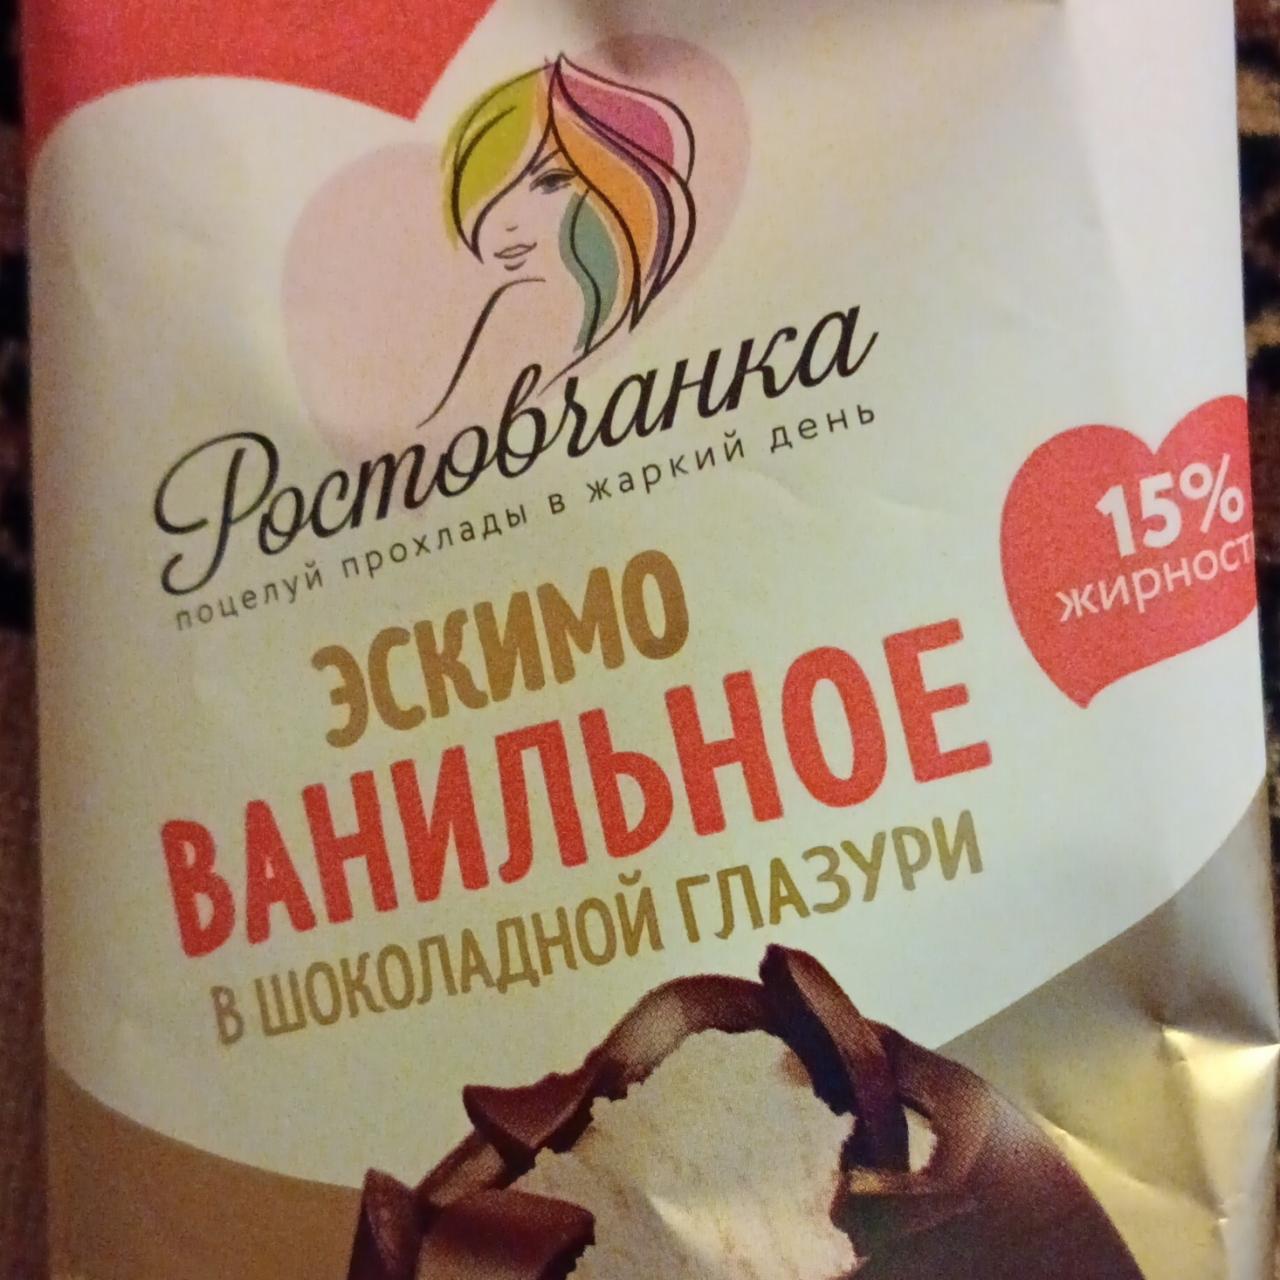 Фото - Мороженое эскимо ванильное в шоколадной глазури Ростовчанка